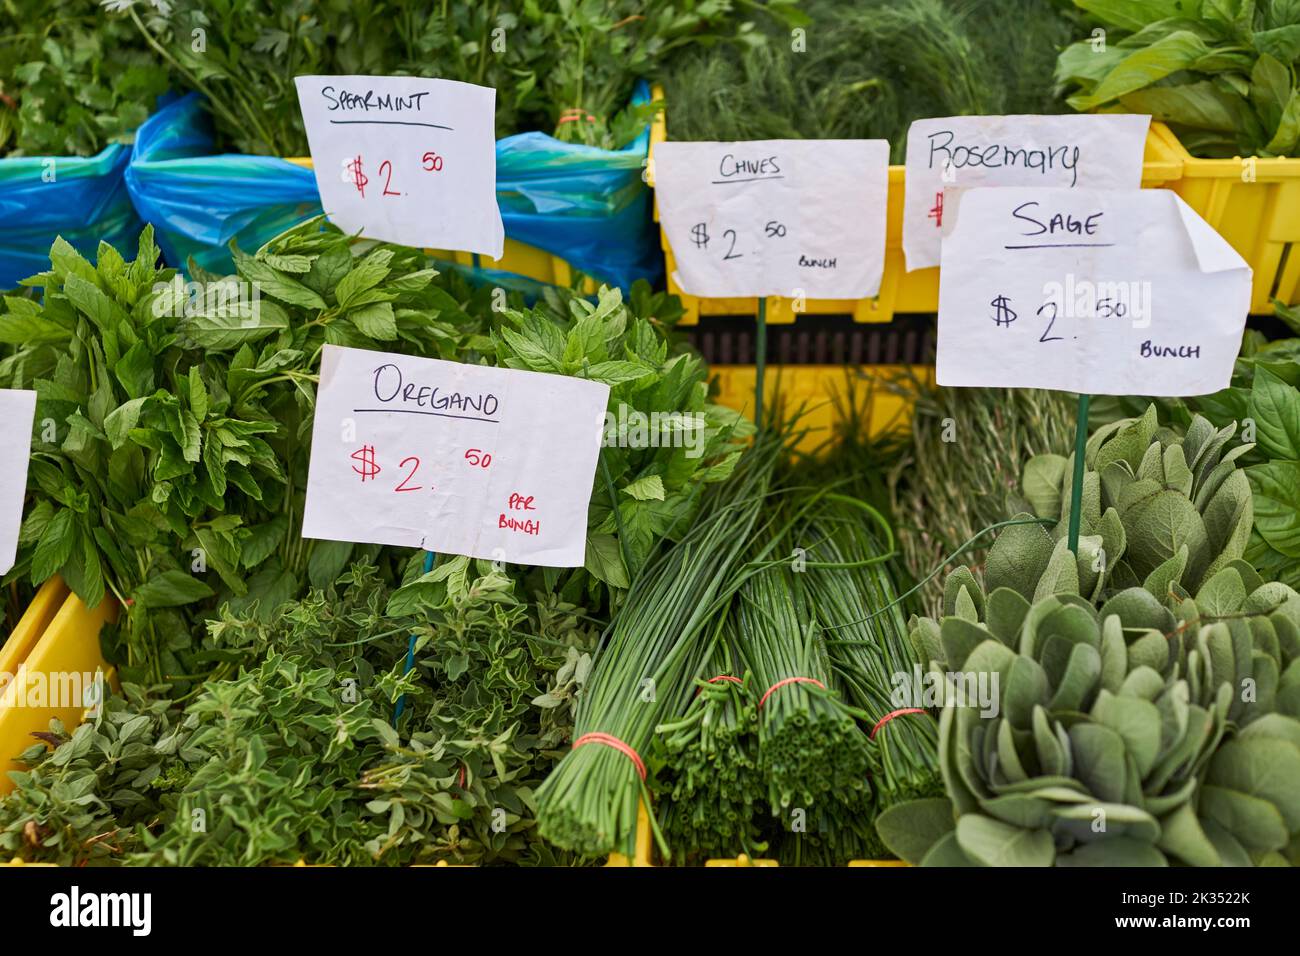 Kräuter zum Verkauf auf einem Bauernmarkt in New Jersey, USA. Grüne Minze, Schnittlauch, Rosmarin, Salbei, Oregano, Alles frisch und gebündelt. Stockfoto